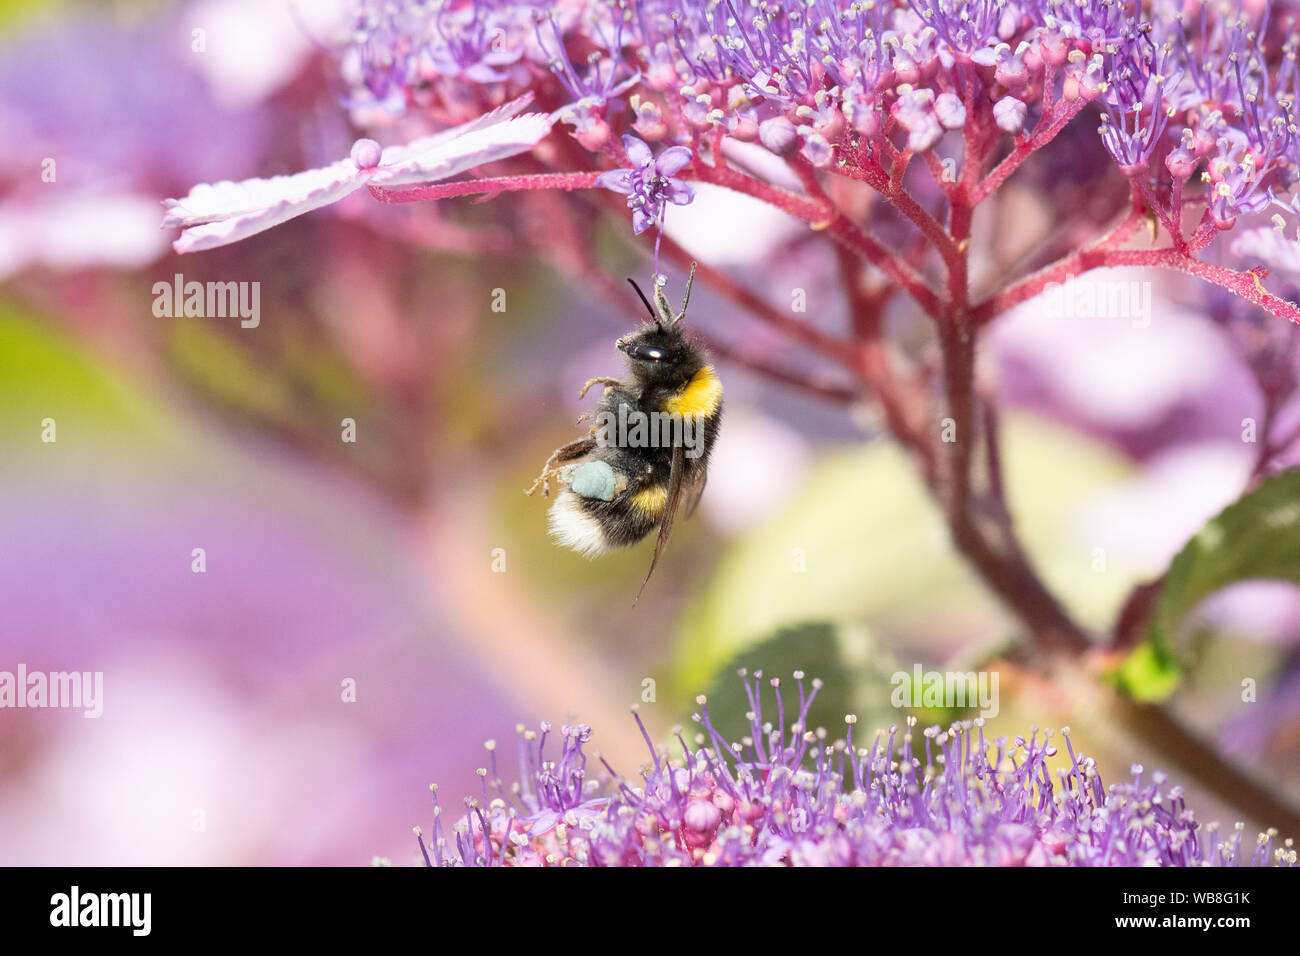 Killearn, Stirlingshire, Scotland, UK. Août 25, 2019. Royaume-uni - un bourdon avec du jaune et bleu corbeilles à pollen sur ses pattes perd son équilibre et s'accroche précairement sur une fleur d'hortensias à la hausse des températures dans un jardin Stirlingshire. Couleur du pollen varie selon l'espèce de plante dont le pollen d'abeilles et peut varier du blanc au bleu foncé Credit : Kay Roxby/Alamy Live News Banque D'Images